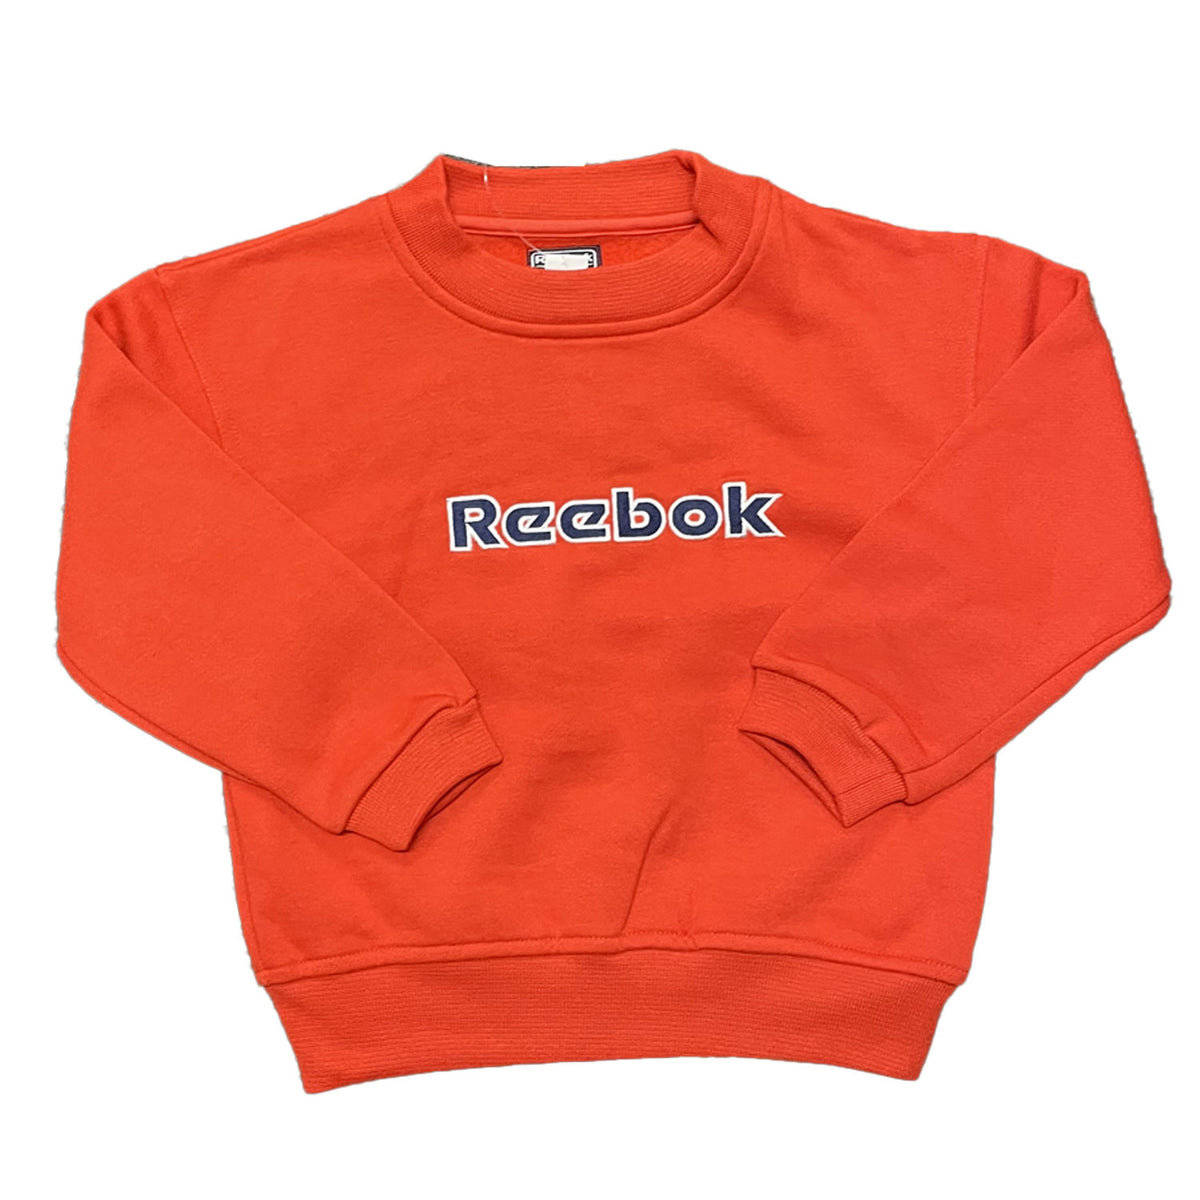 Reebok's Infant Sports Sweatshirt 4